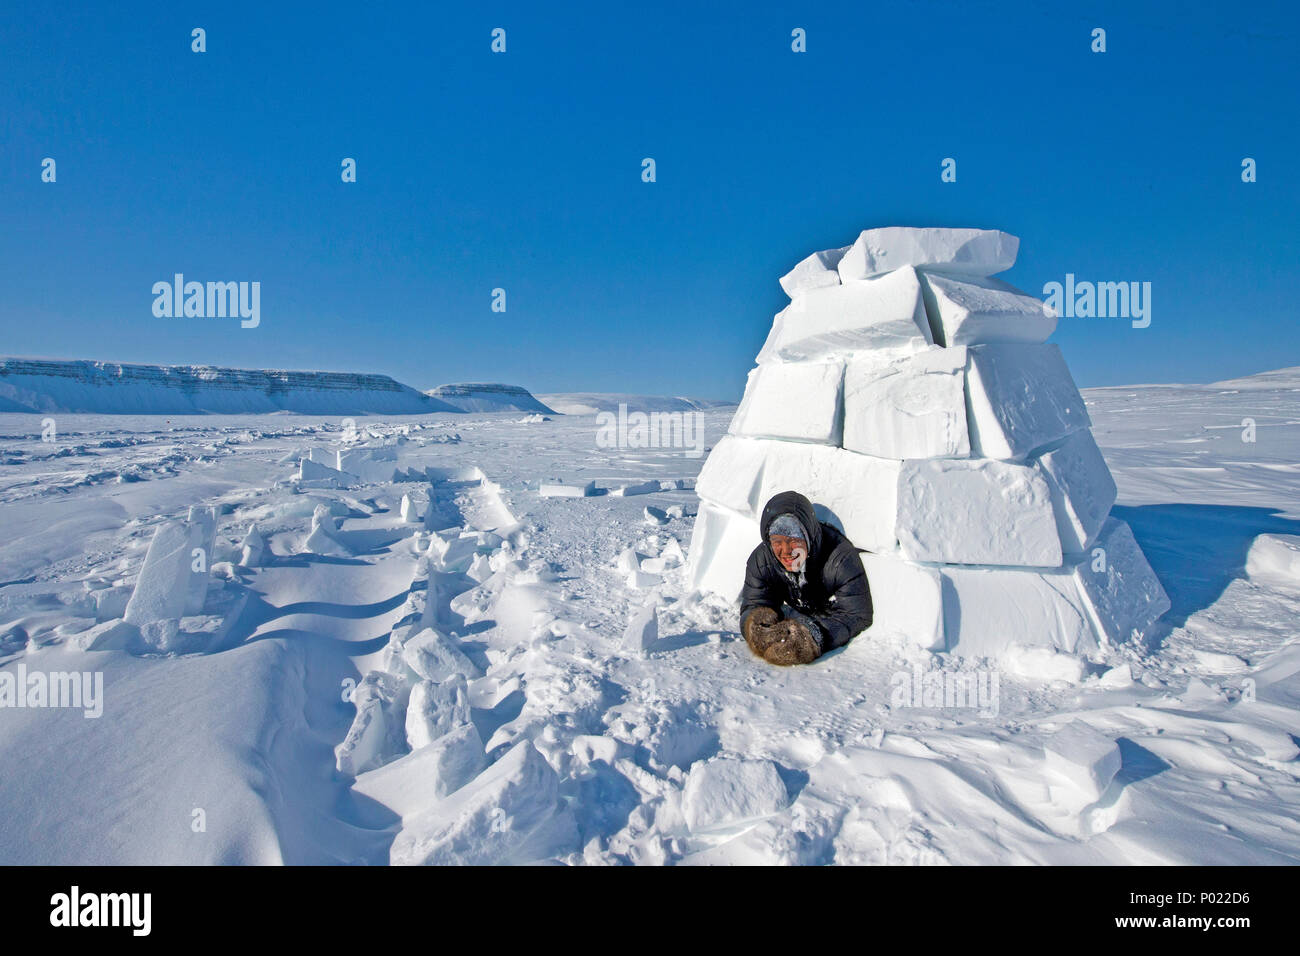 Schaut Inuit aus einem Iglu, Nunavut Territorium, Kanada | Inuit guarda al di fuori di un igloo, Nunavut teritorry, Canada Foto Stock